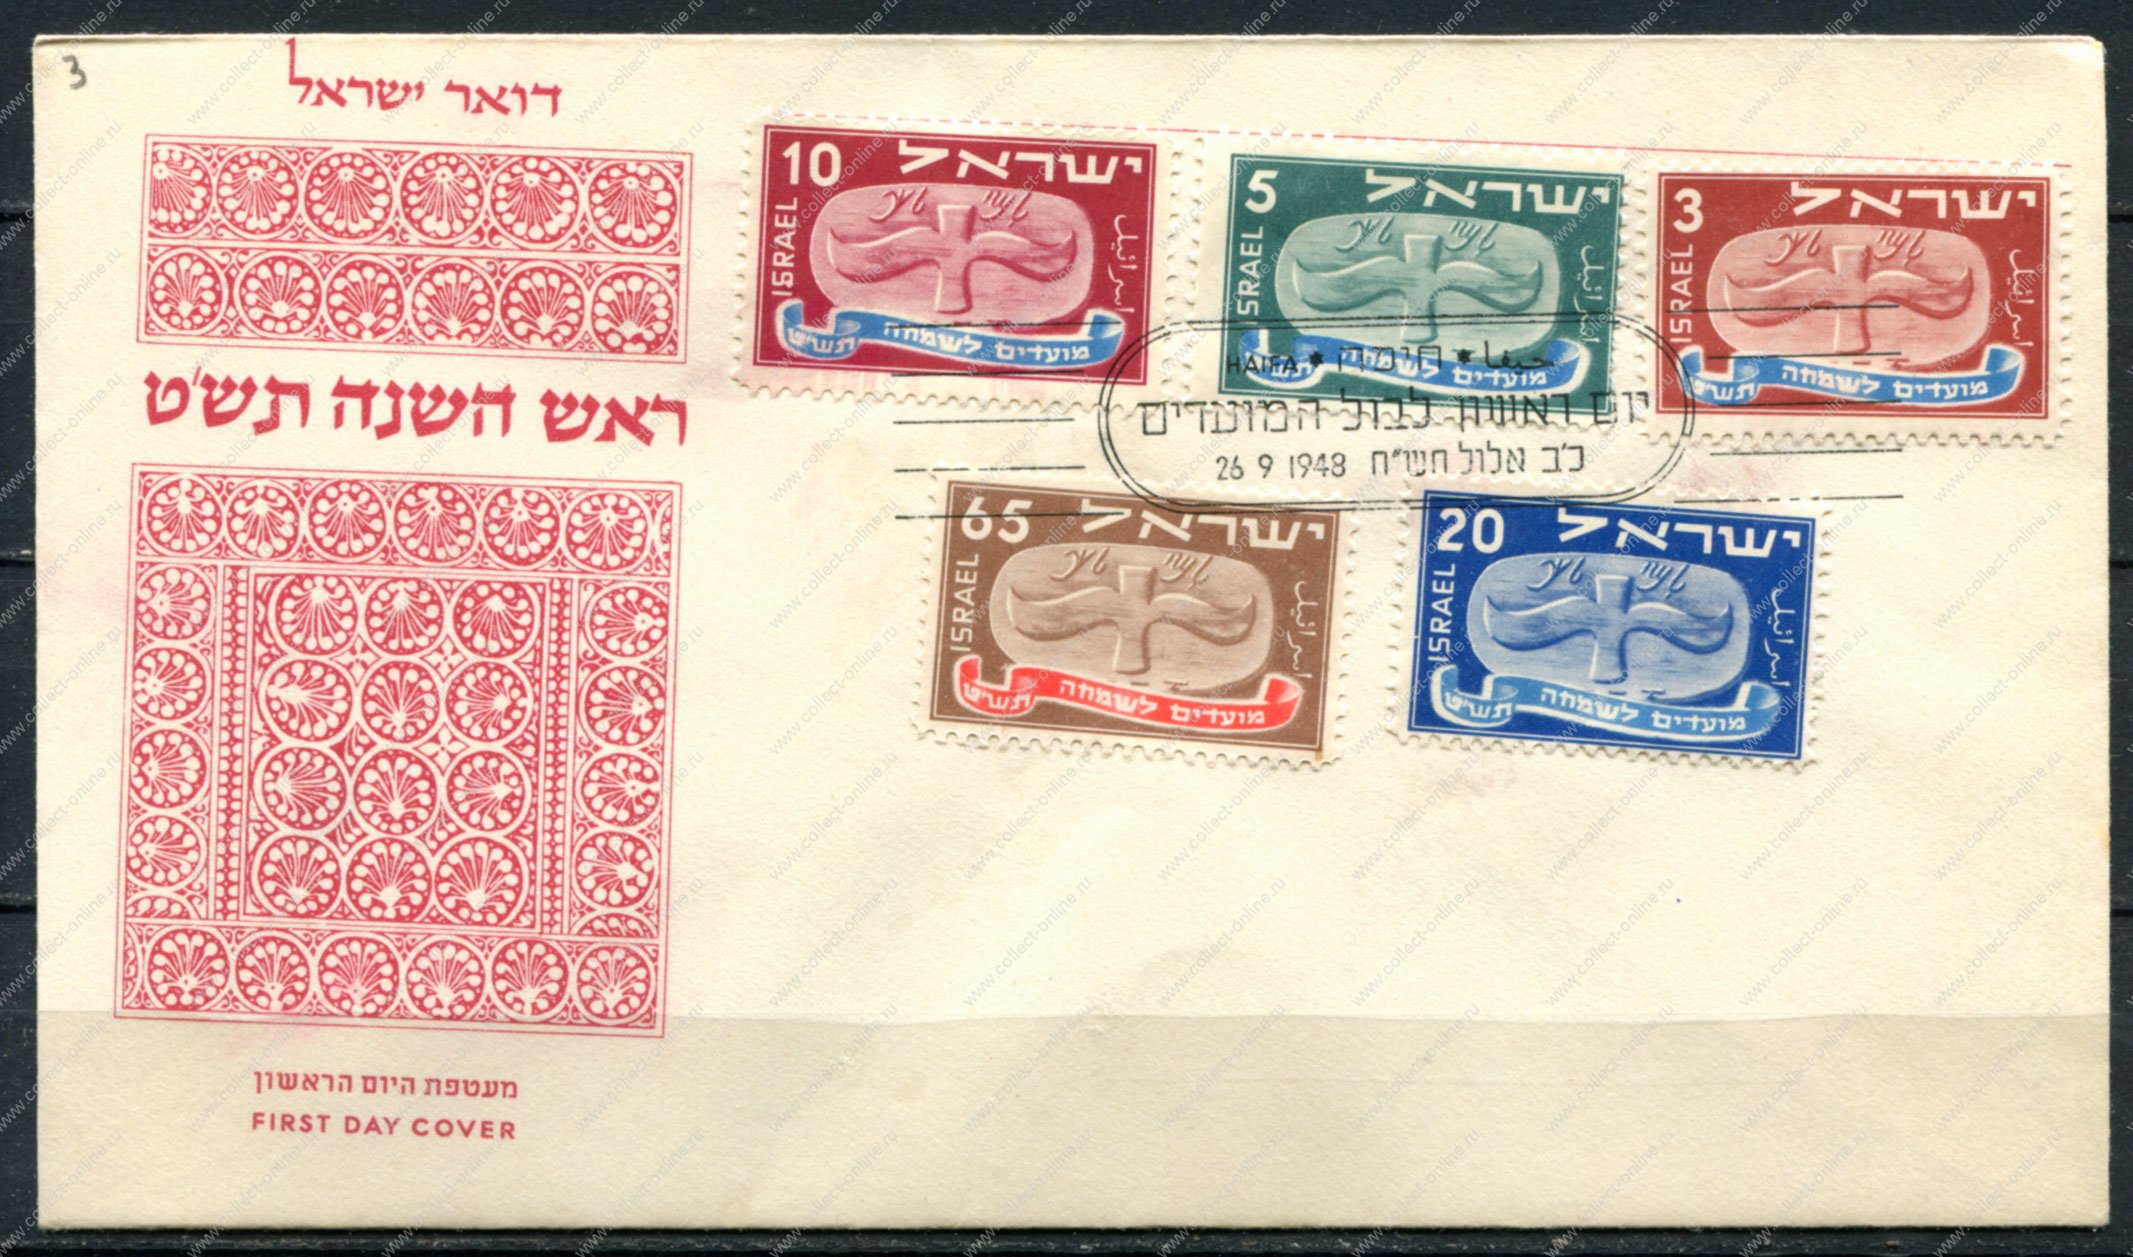 Country mark. Израильские марки 90. Марки стран. Почтовые марки Израиля по годам. Y.A.R. Страна марки.